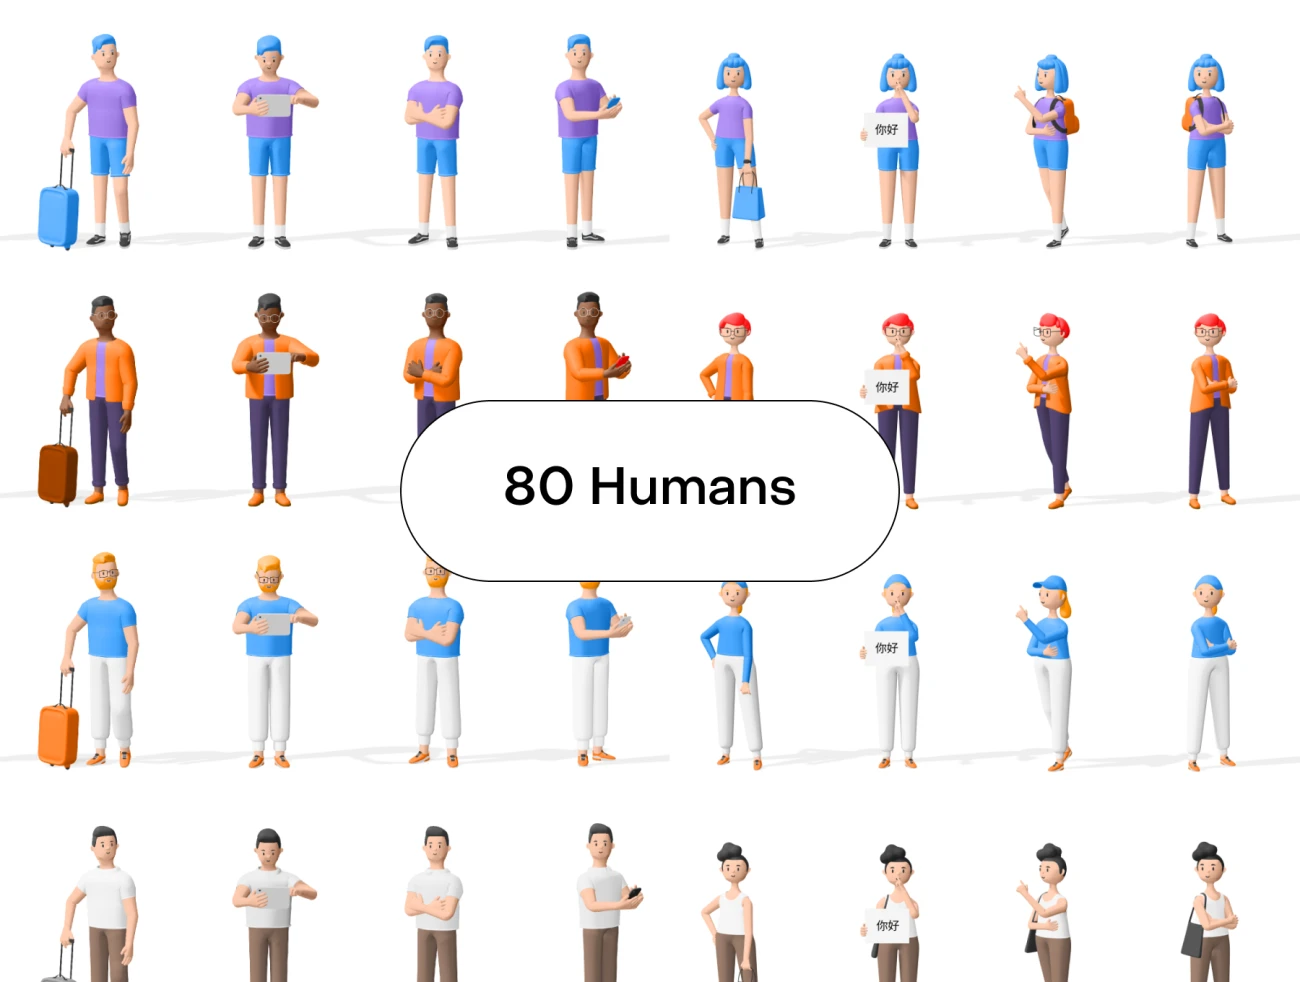 Humans 3d characters 80个3D人物角色形象包含运动居家商务便装4种着装风格-3D/图标、人物插画、人物模特、场景插画、学习生活、插画、设计元素、运动健身-到位啦UI